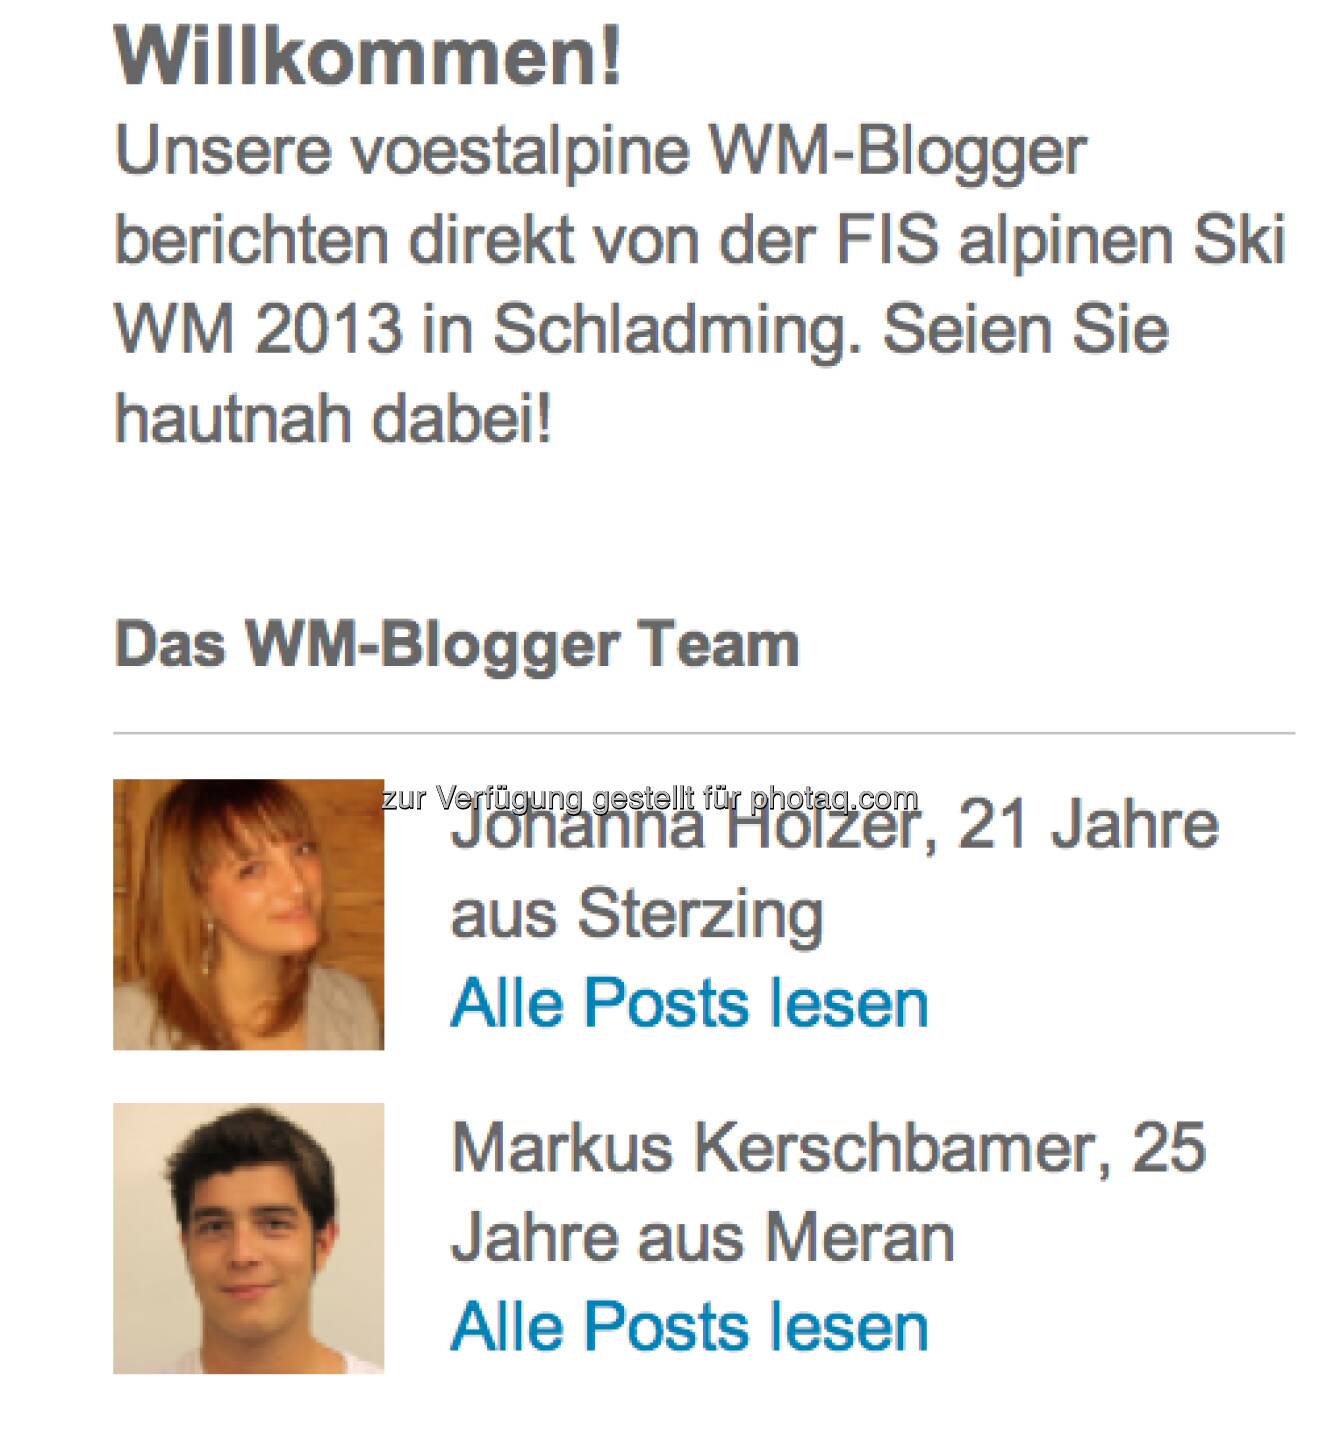 Vorstellung der alpinen WM-Blogger Johanna Holzer und Markus Kerschbamer (zwei Südtiroler)